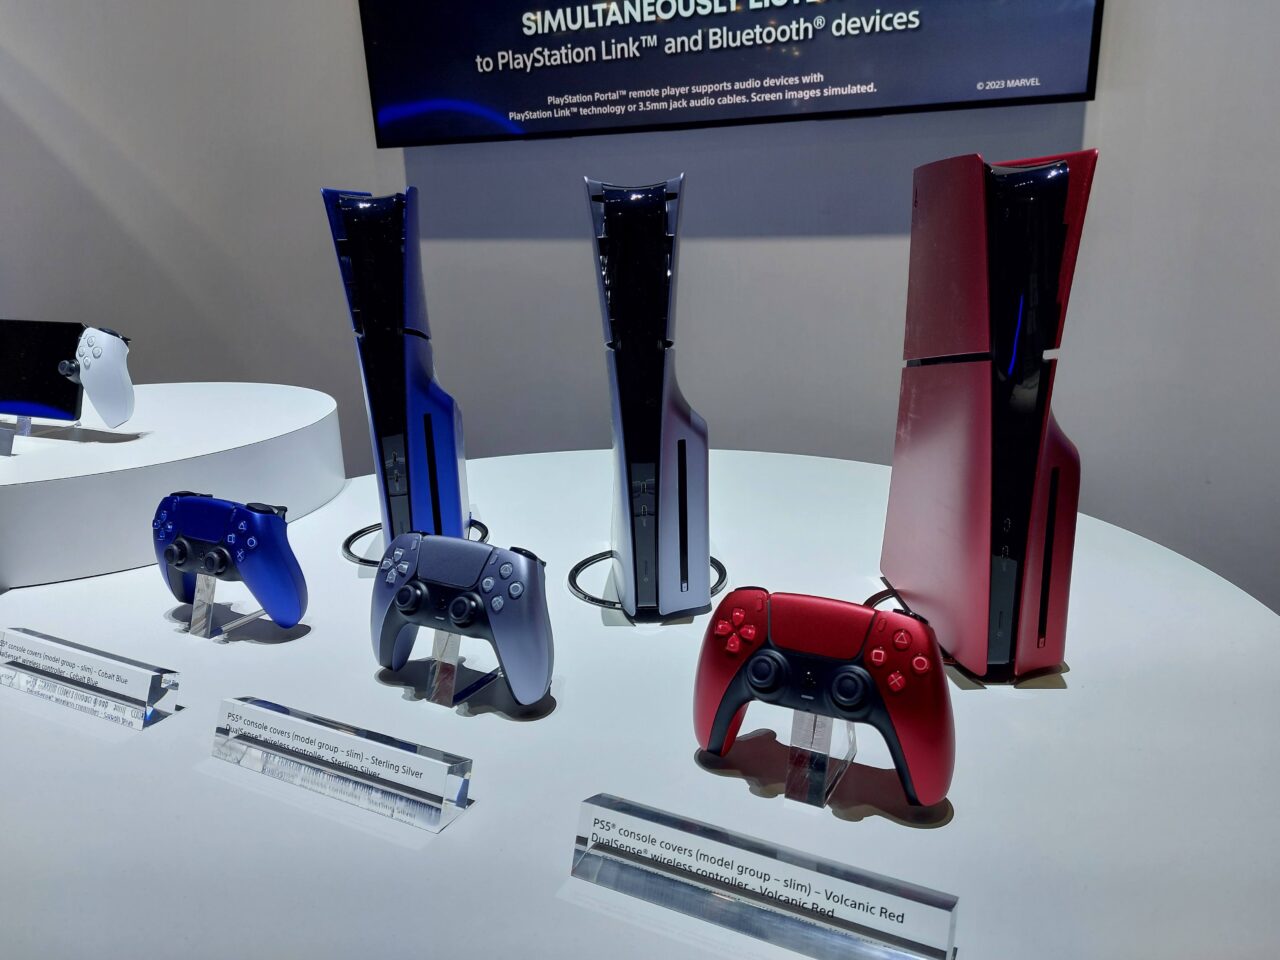 Ekspozycja trzech konsol PlayStation 5 / PS5 i kontrolerów DualSense w kolorach Galatic Purple, Cosmic Red i Midnight Black, umieszczonych na białym stoliku wystawienniczym.